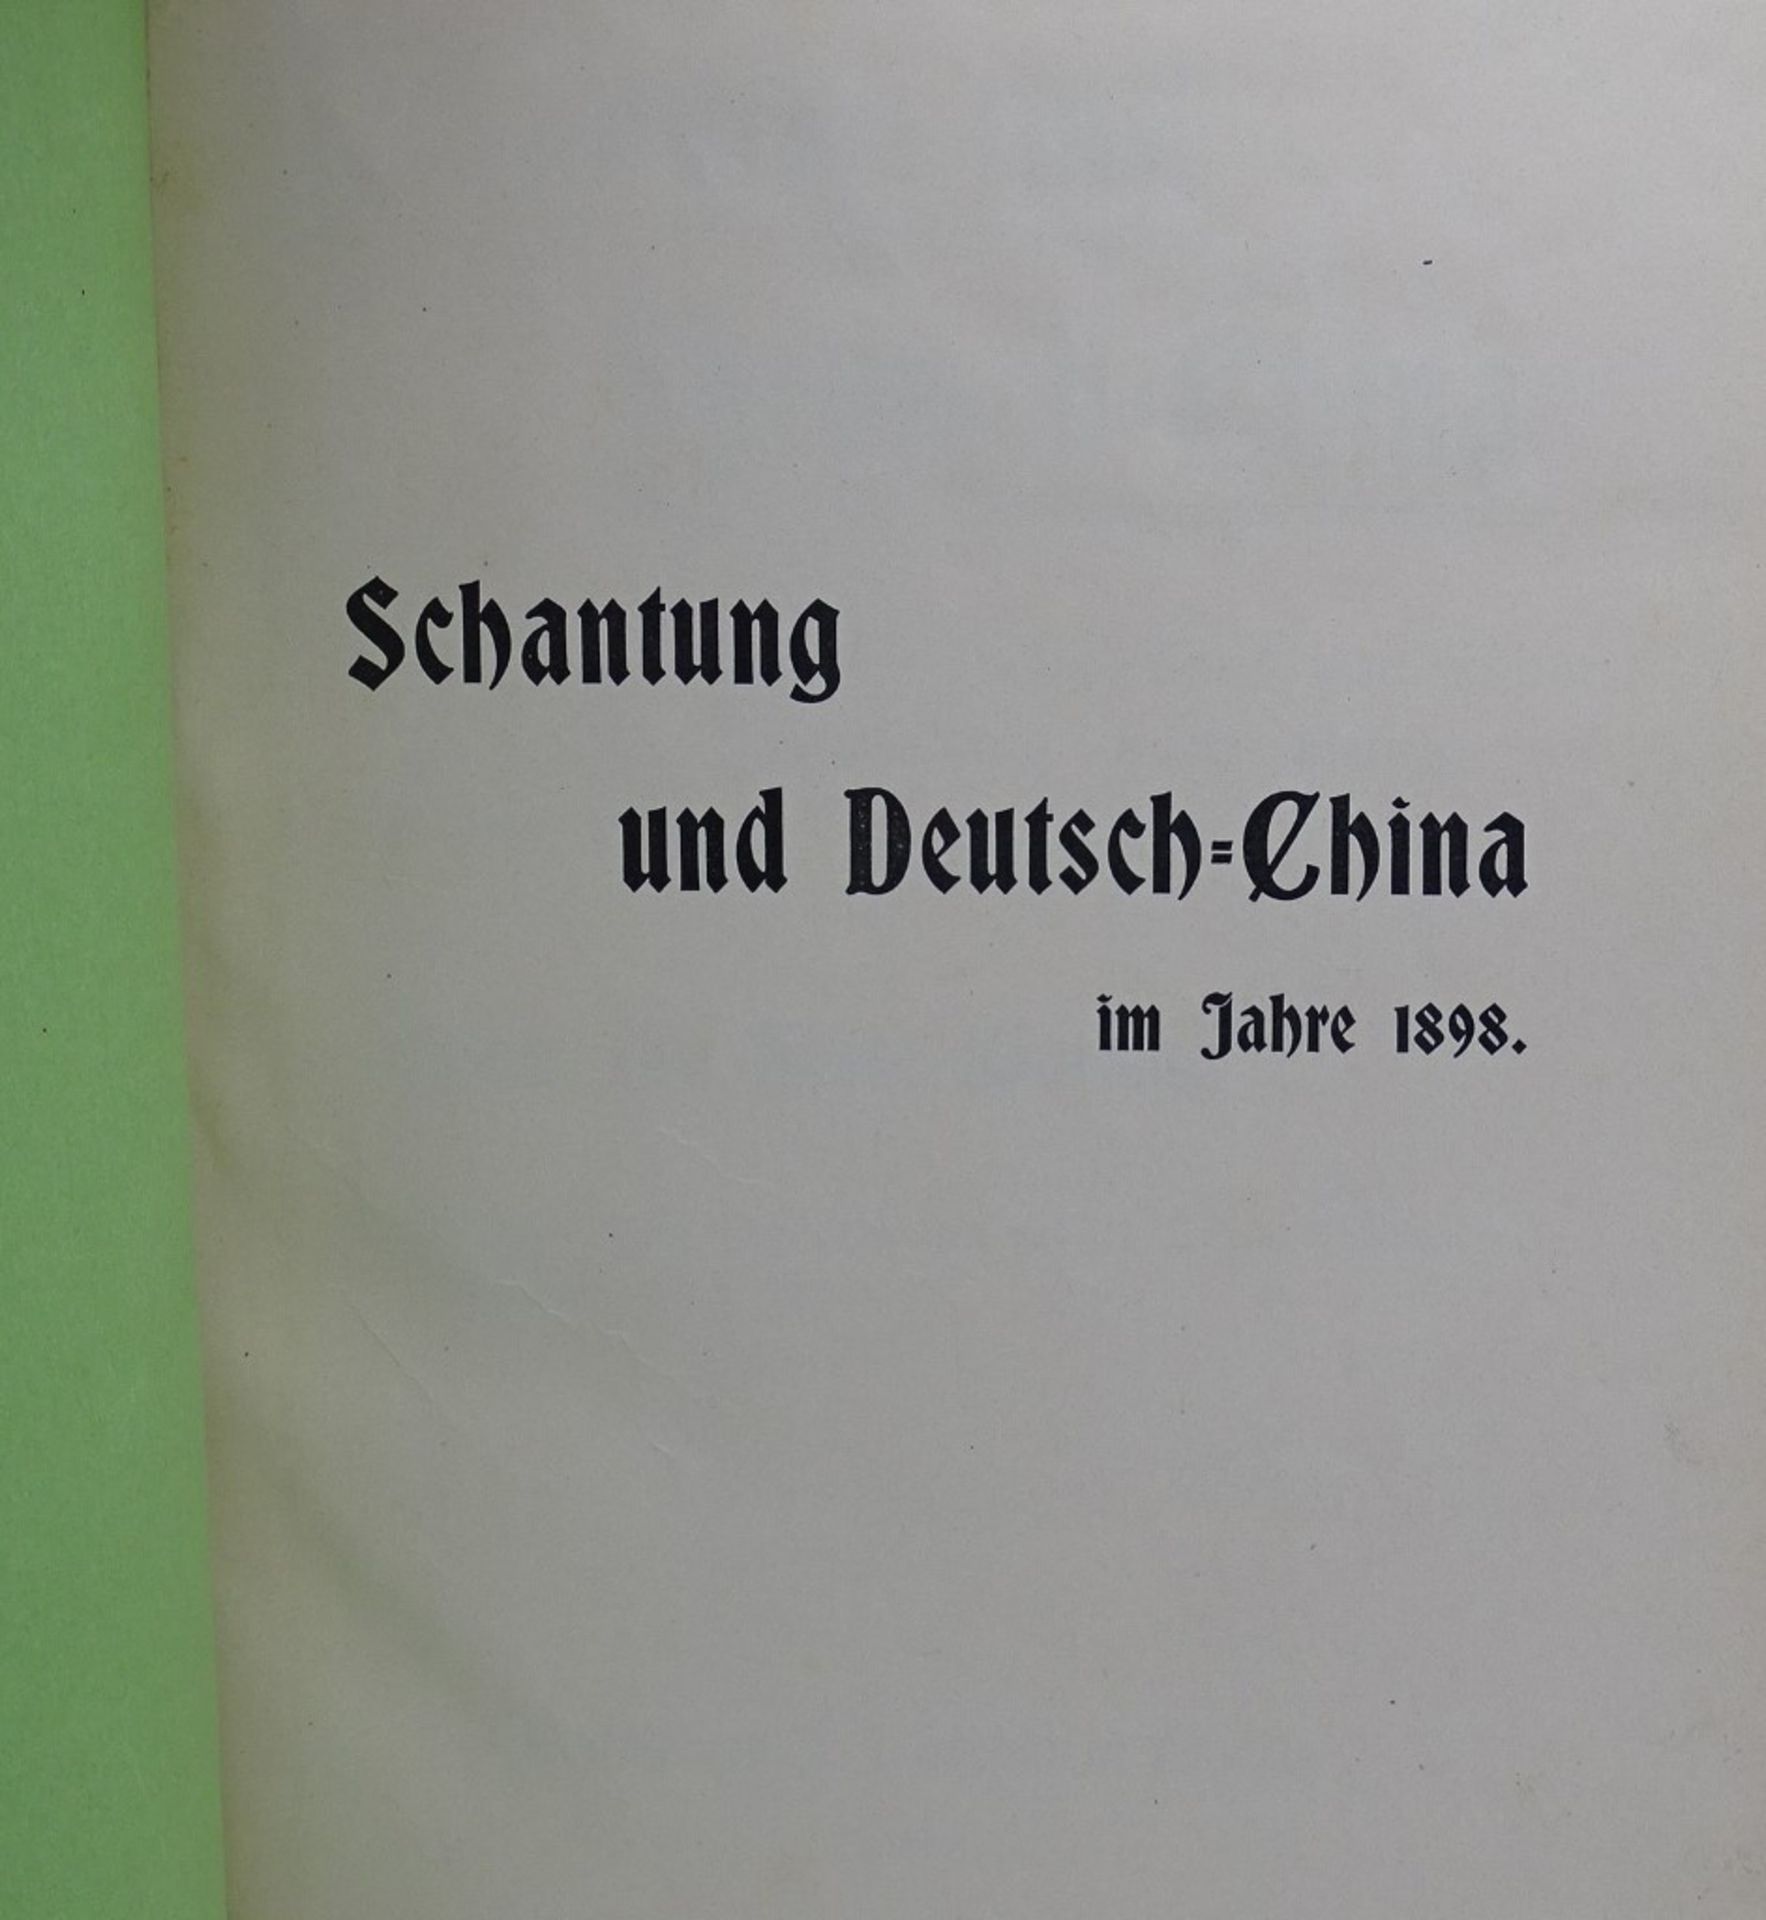 "Schantung und Deutsch- China im Jahre 1898" von Ernst von Hesse-Wartegg, Leipzig 1898 - Bild 2 aus 9